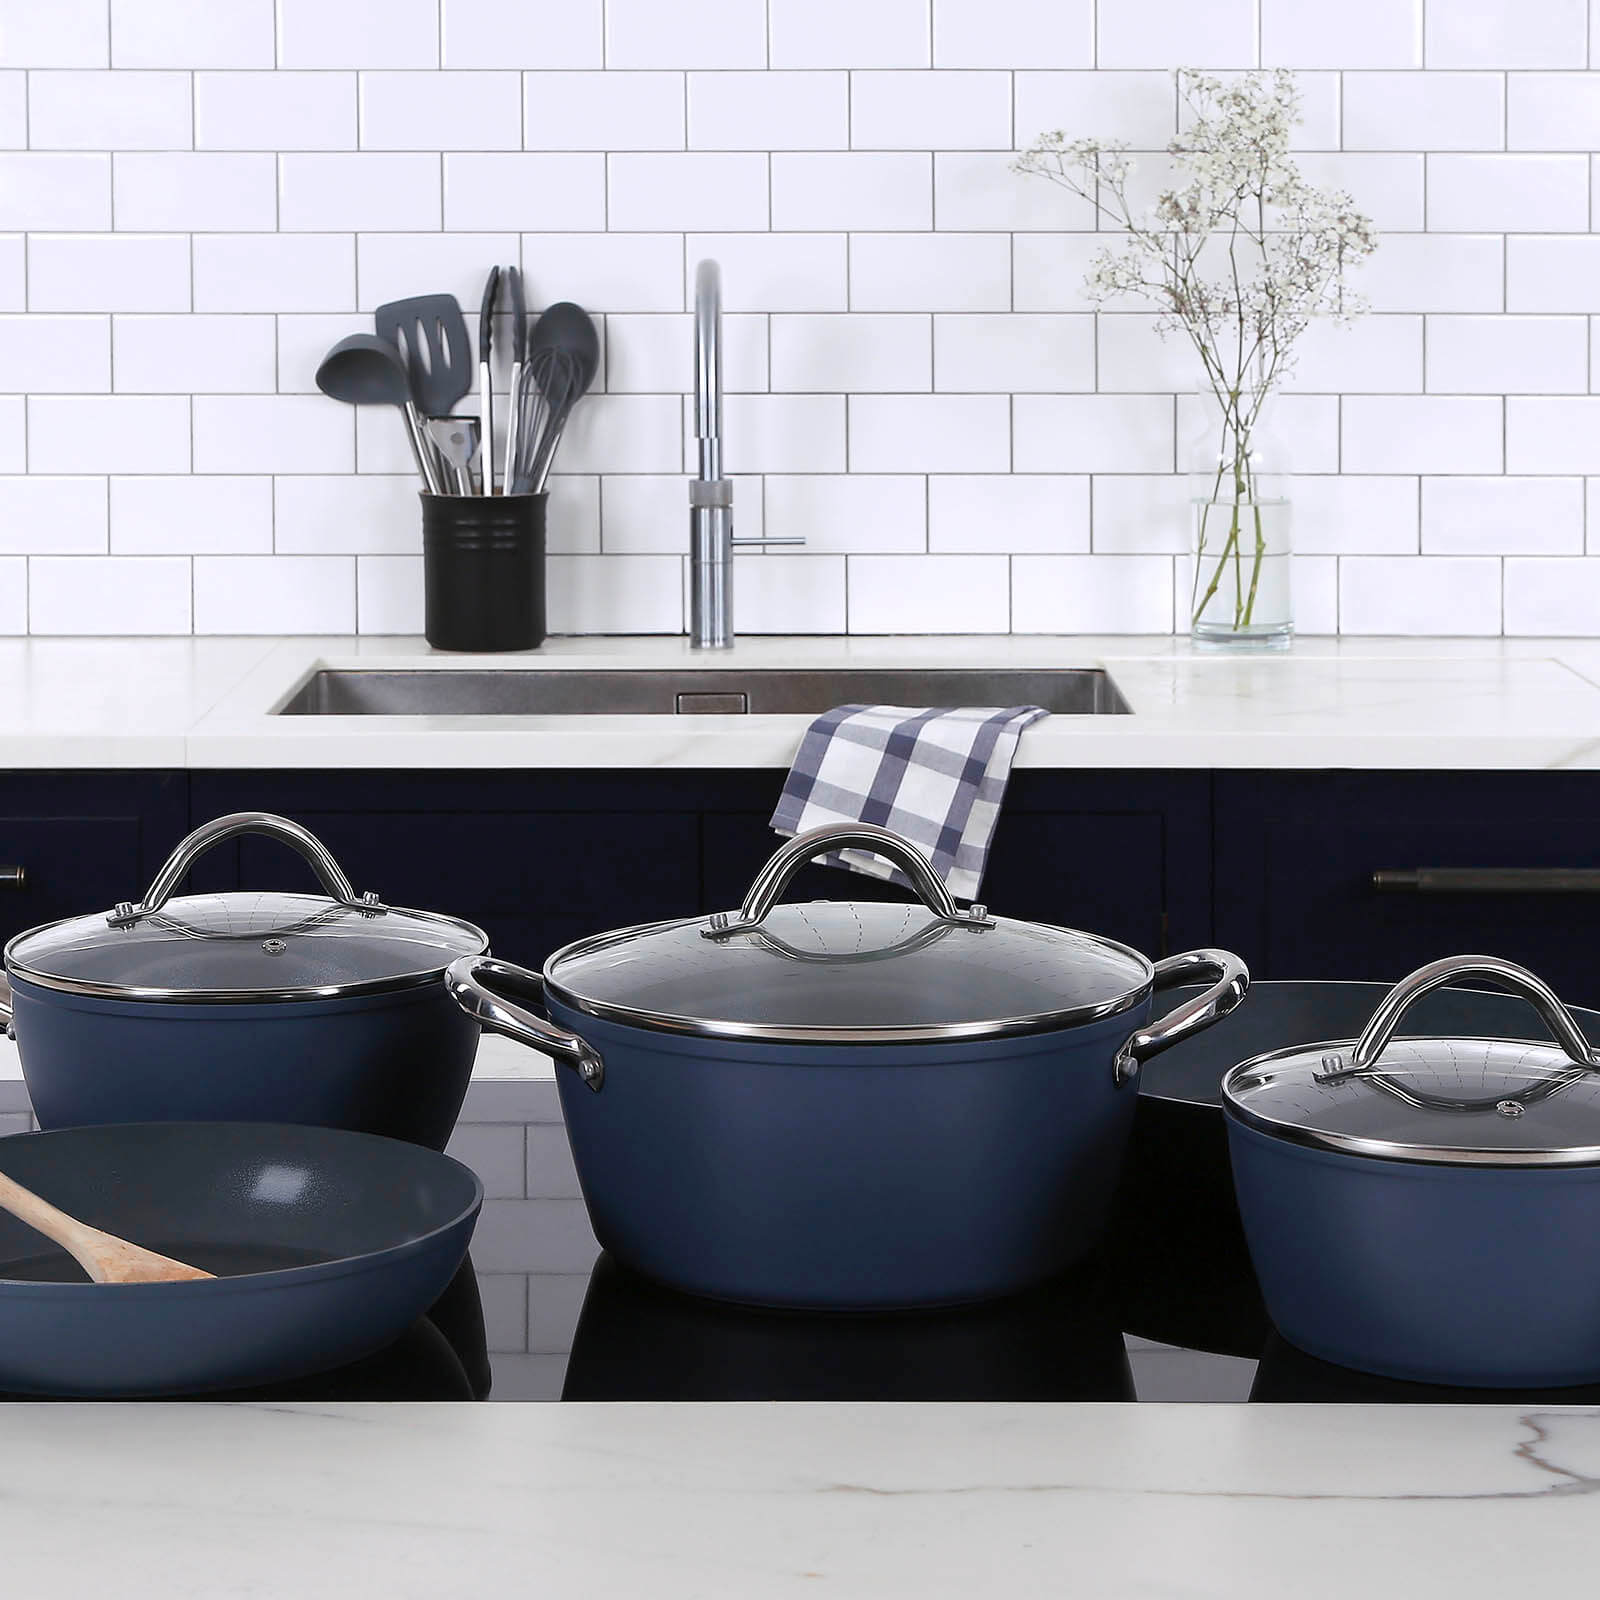 NEW WSOK BOM Kitchen Starter Set Serves 8  Kitchen essentials, Gadgets kitchen  cooking, Kitchenware